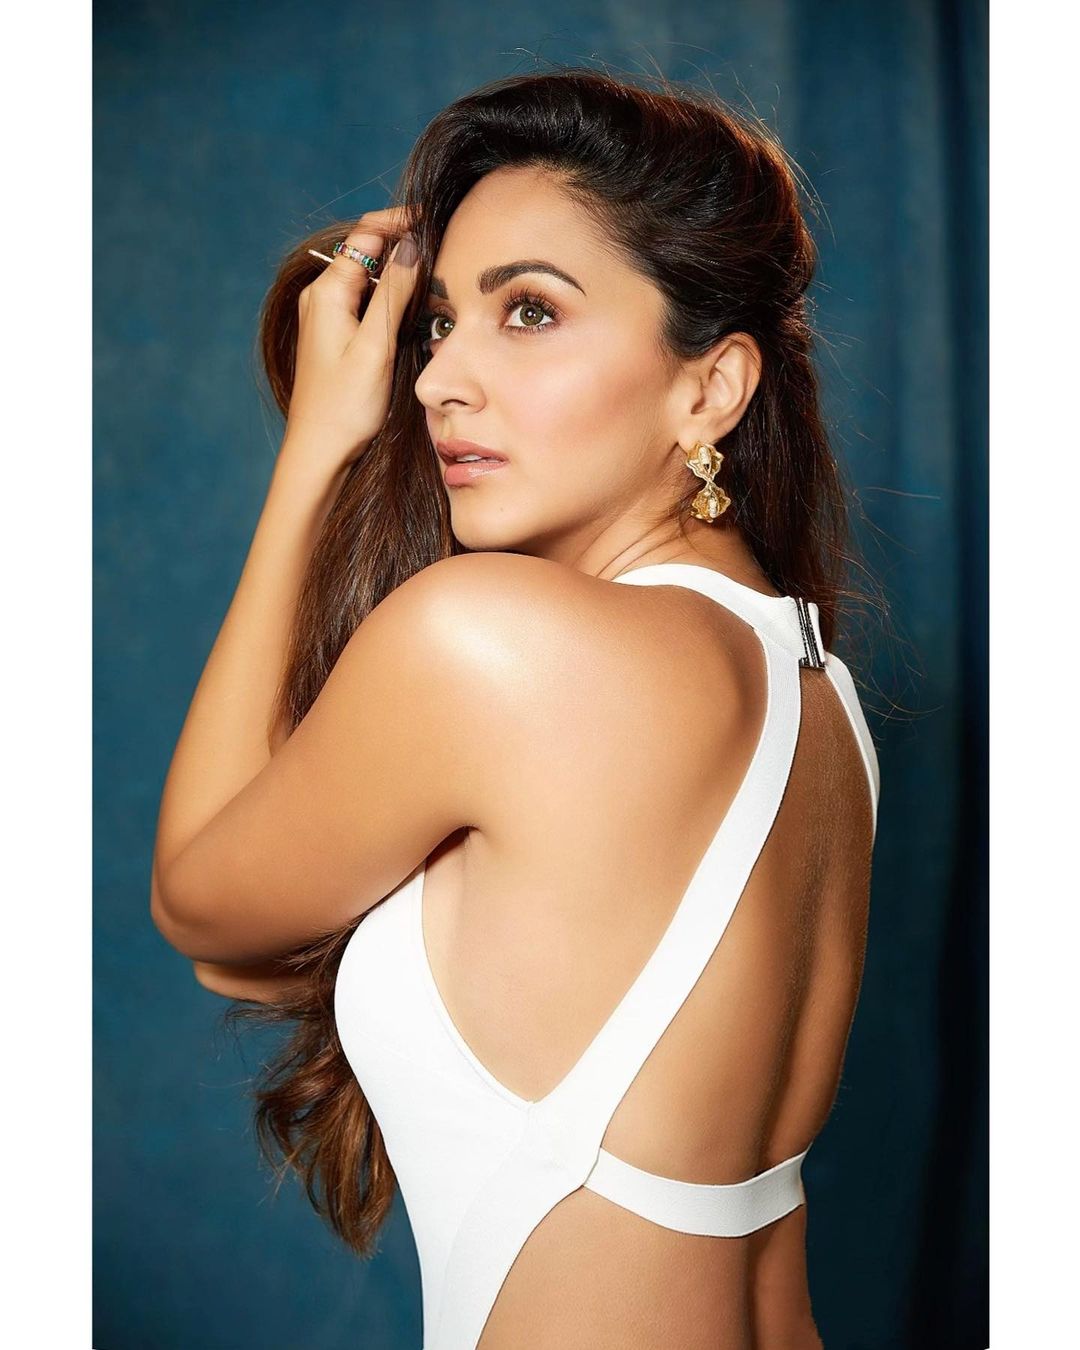 Kiara Advani is making heads turn in a stylish backless white top